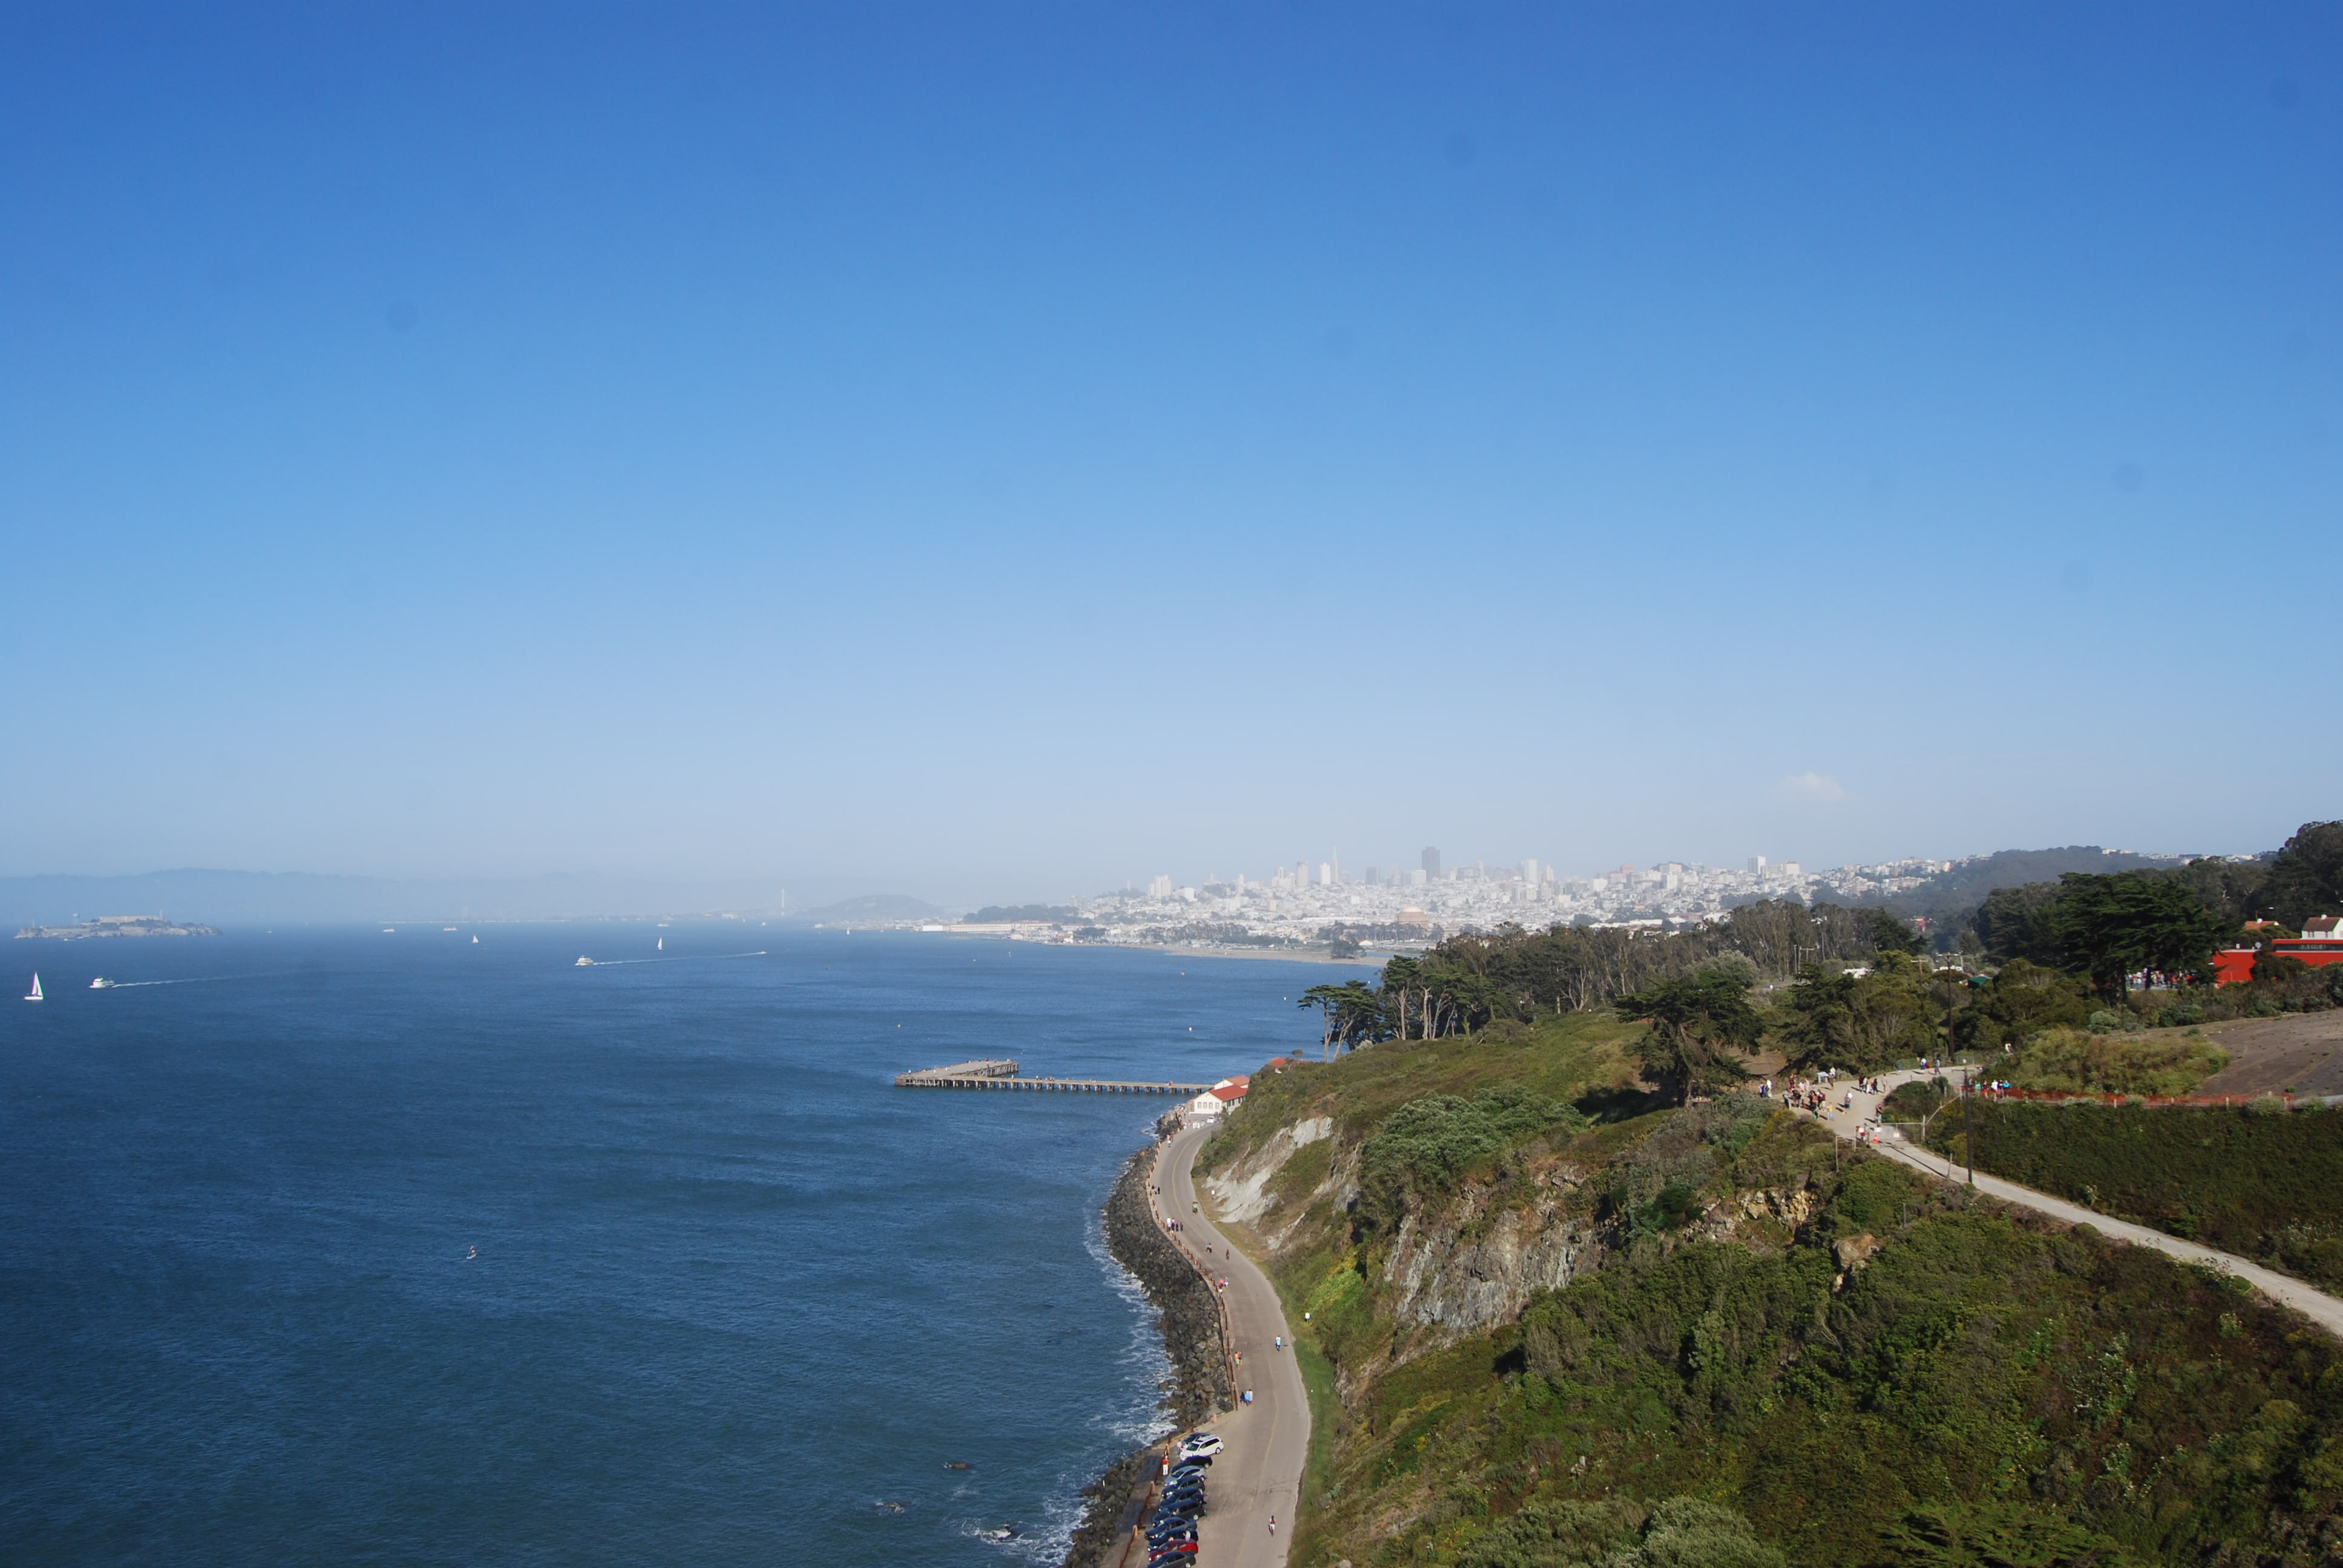 Ảnh 5: Vịnh San Francisco nhìn từ hướng Cầu cổng vàng